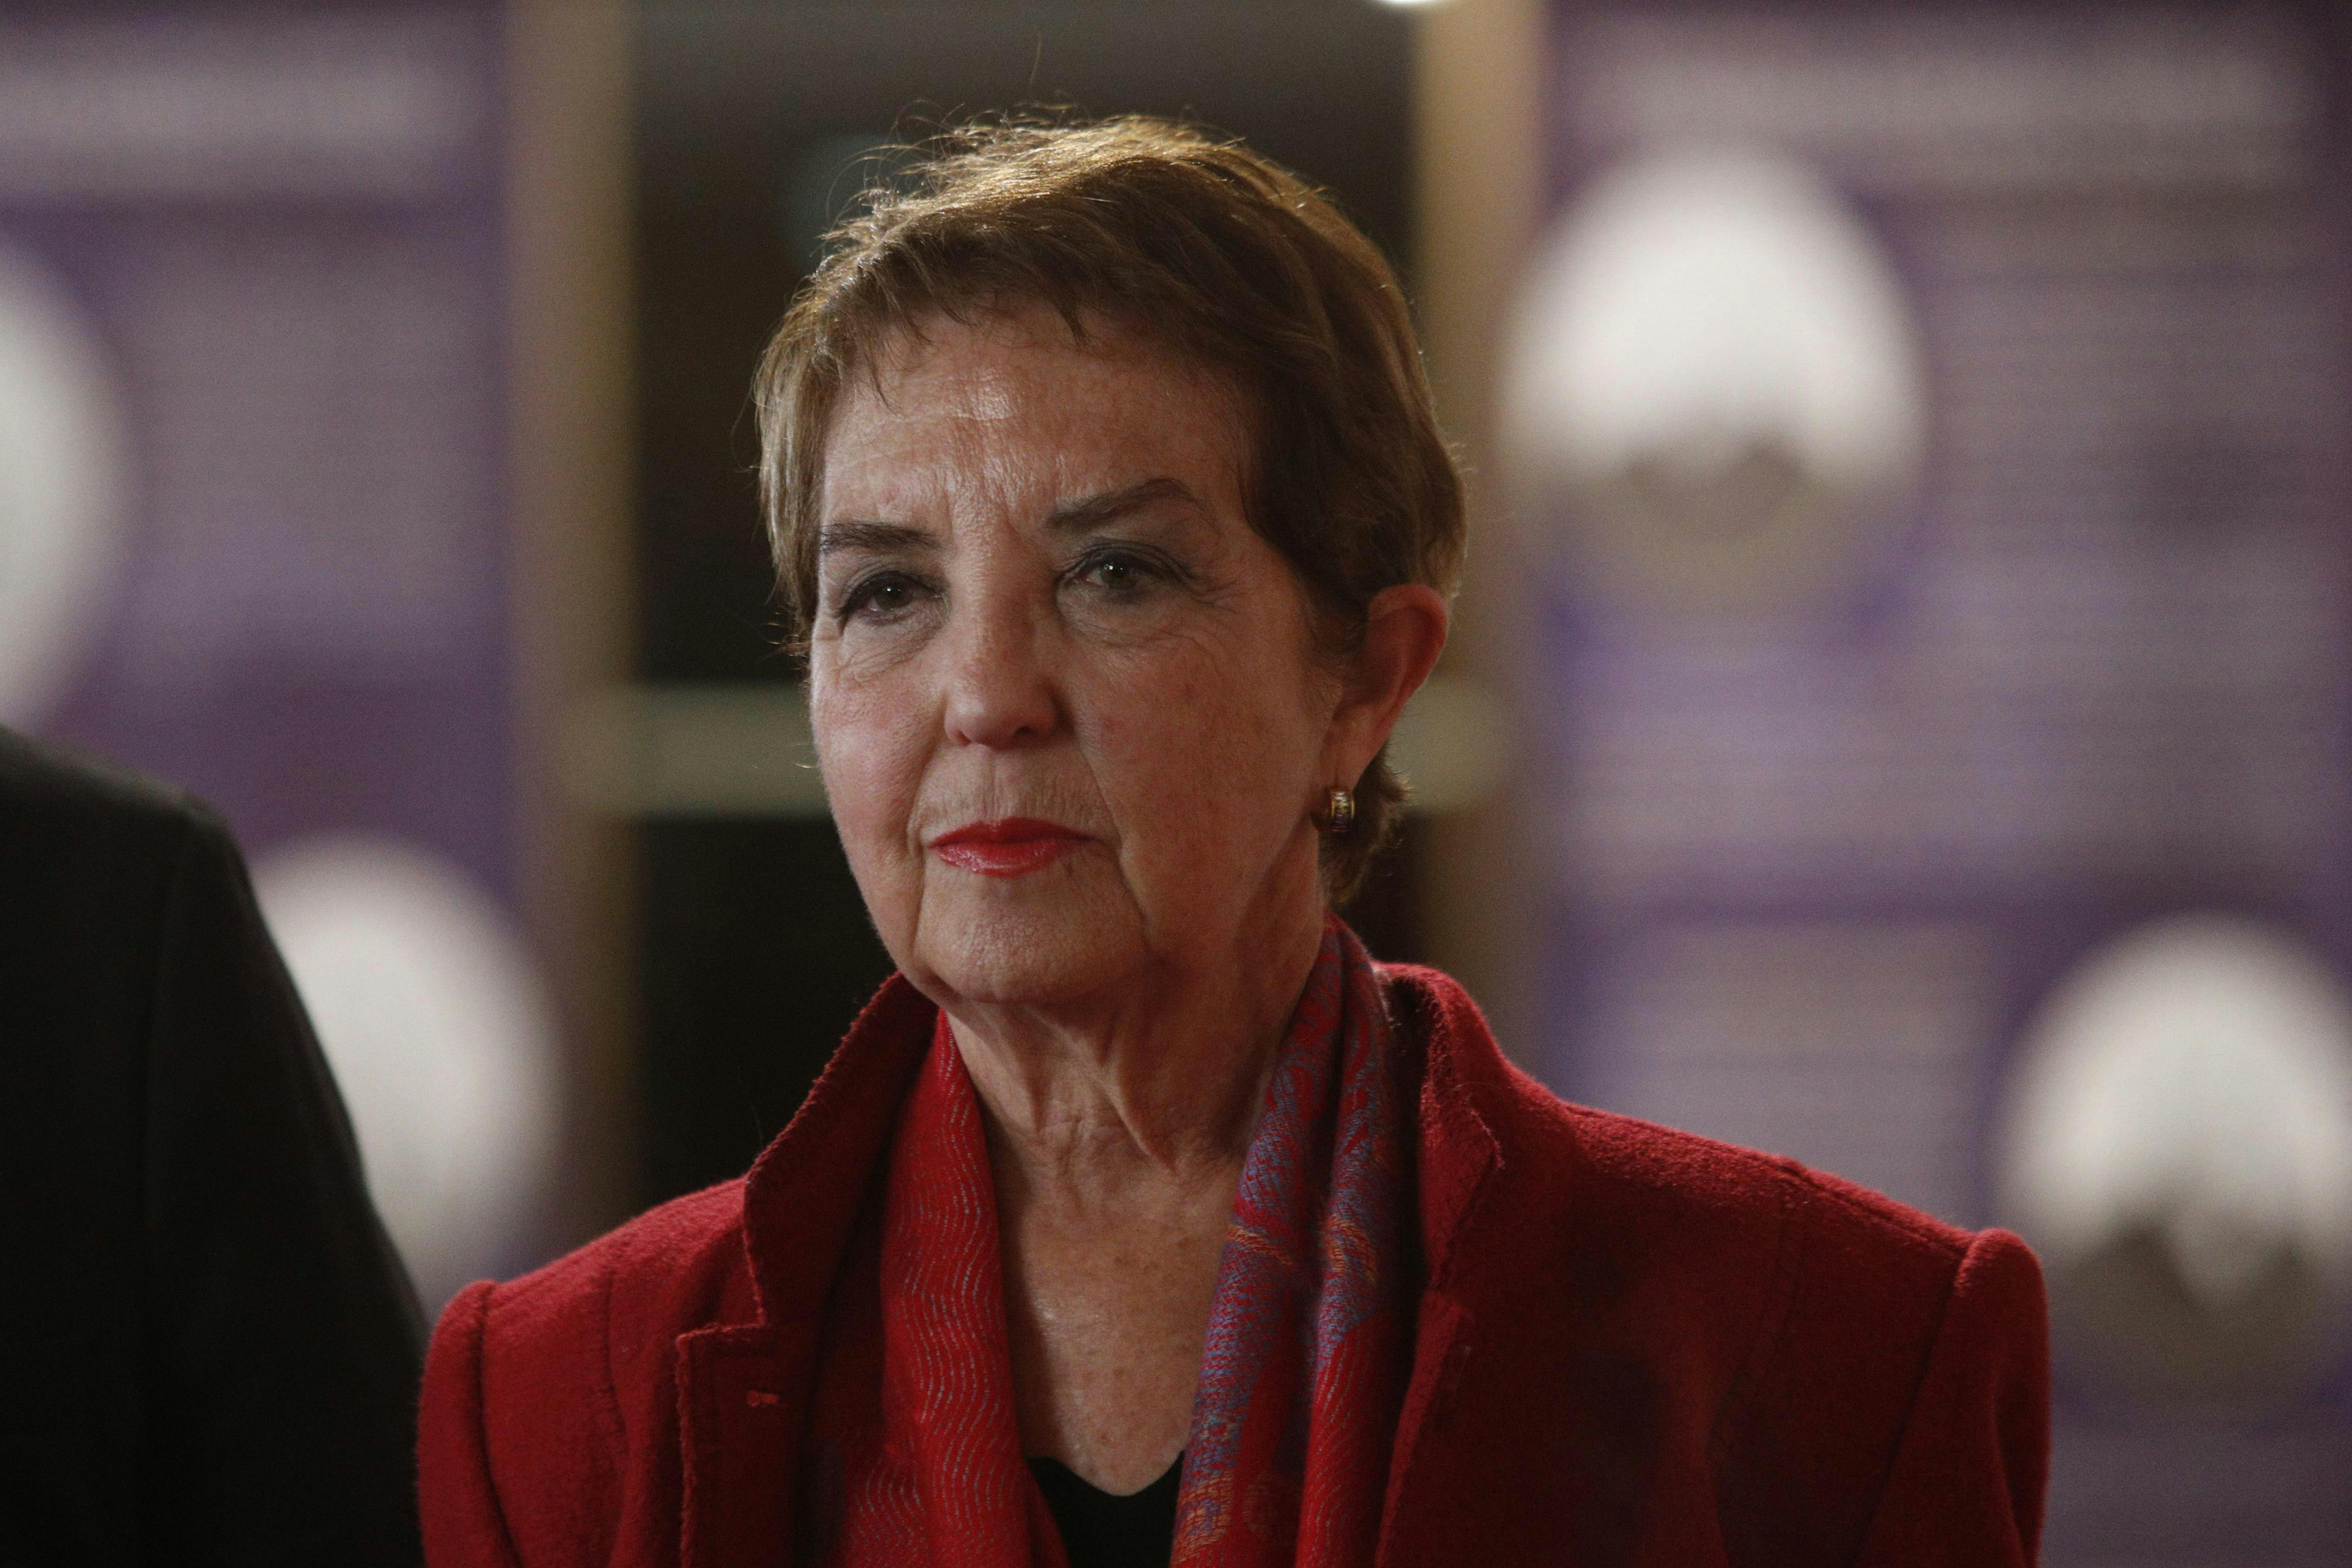 Presidenta de Evópoli, Gloria Hutt, tras plebiscito constitucional: “Hemos sido claros siempre, nuestro proyecto político es distinto al del Partido Republicano”